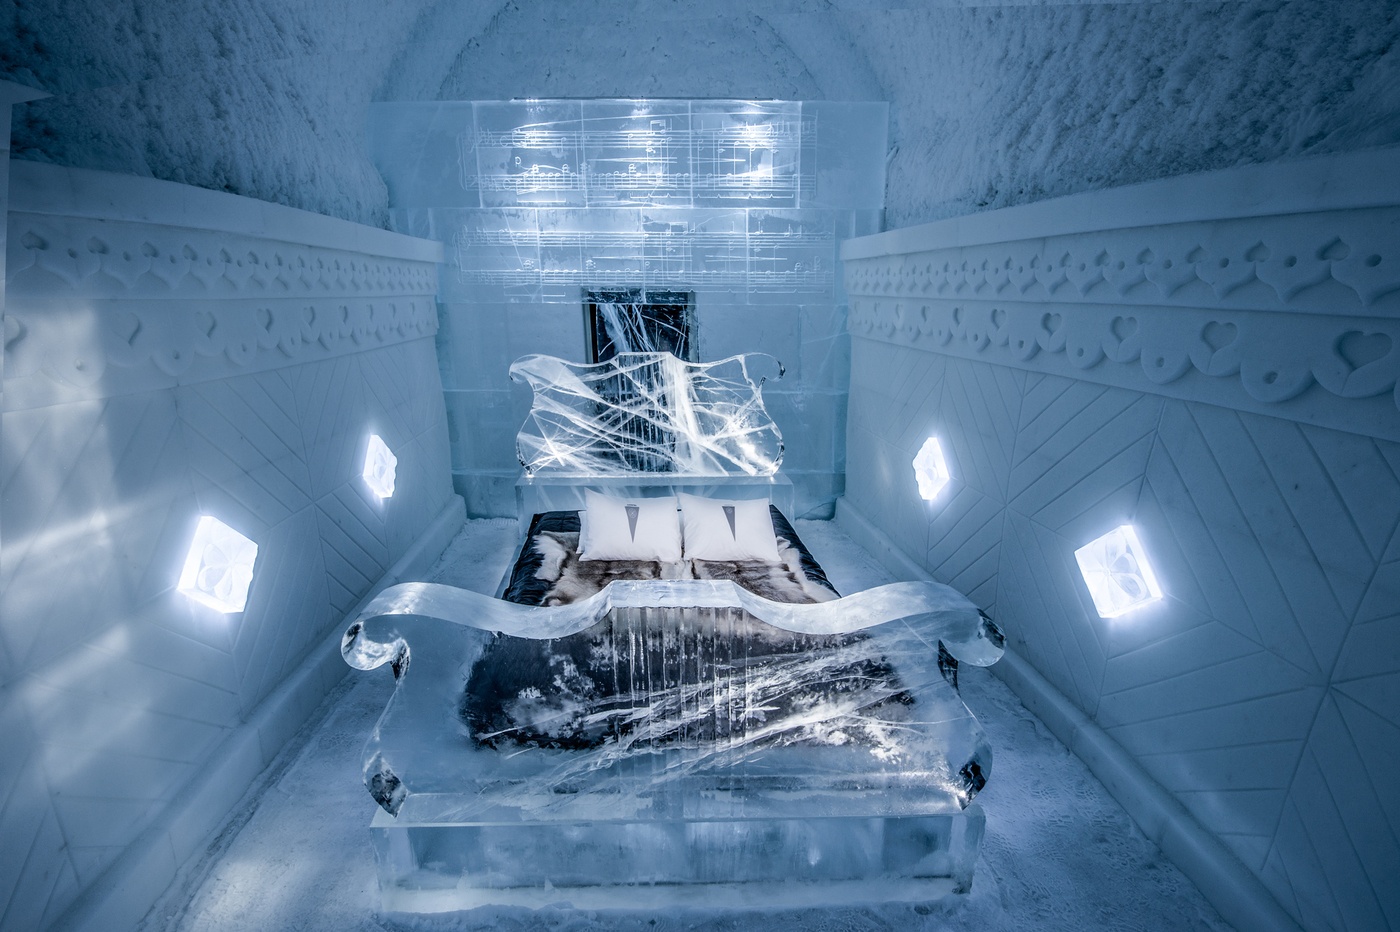 imagen 13 de Icehotel, el hotel de hielo, ha abierto sus suites de invierno con mucho arte.